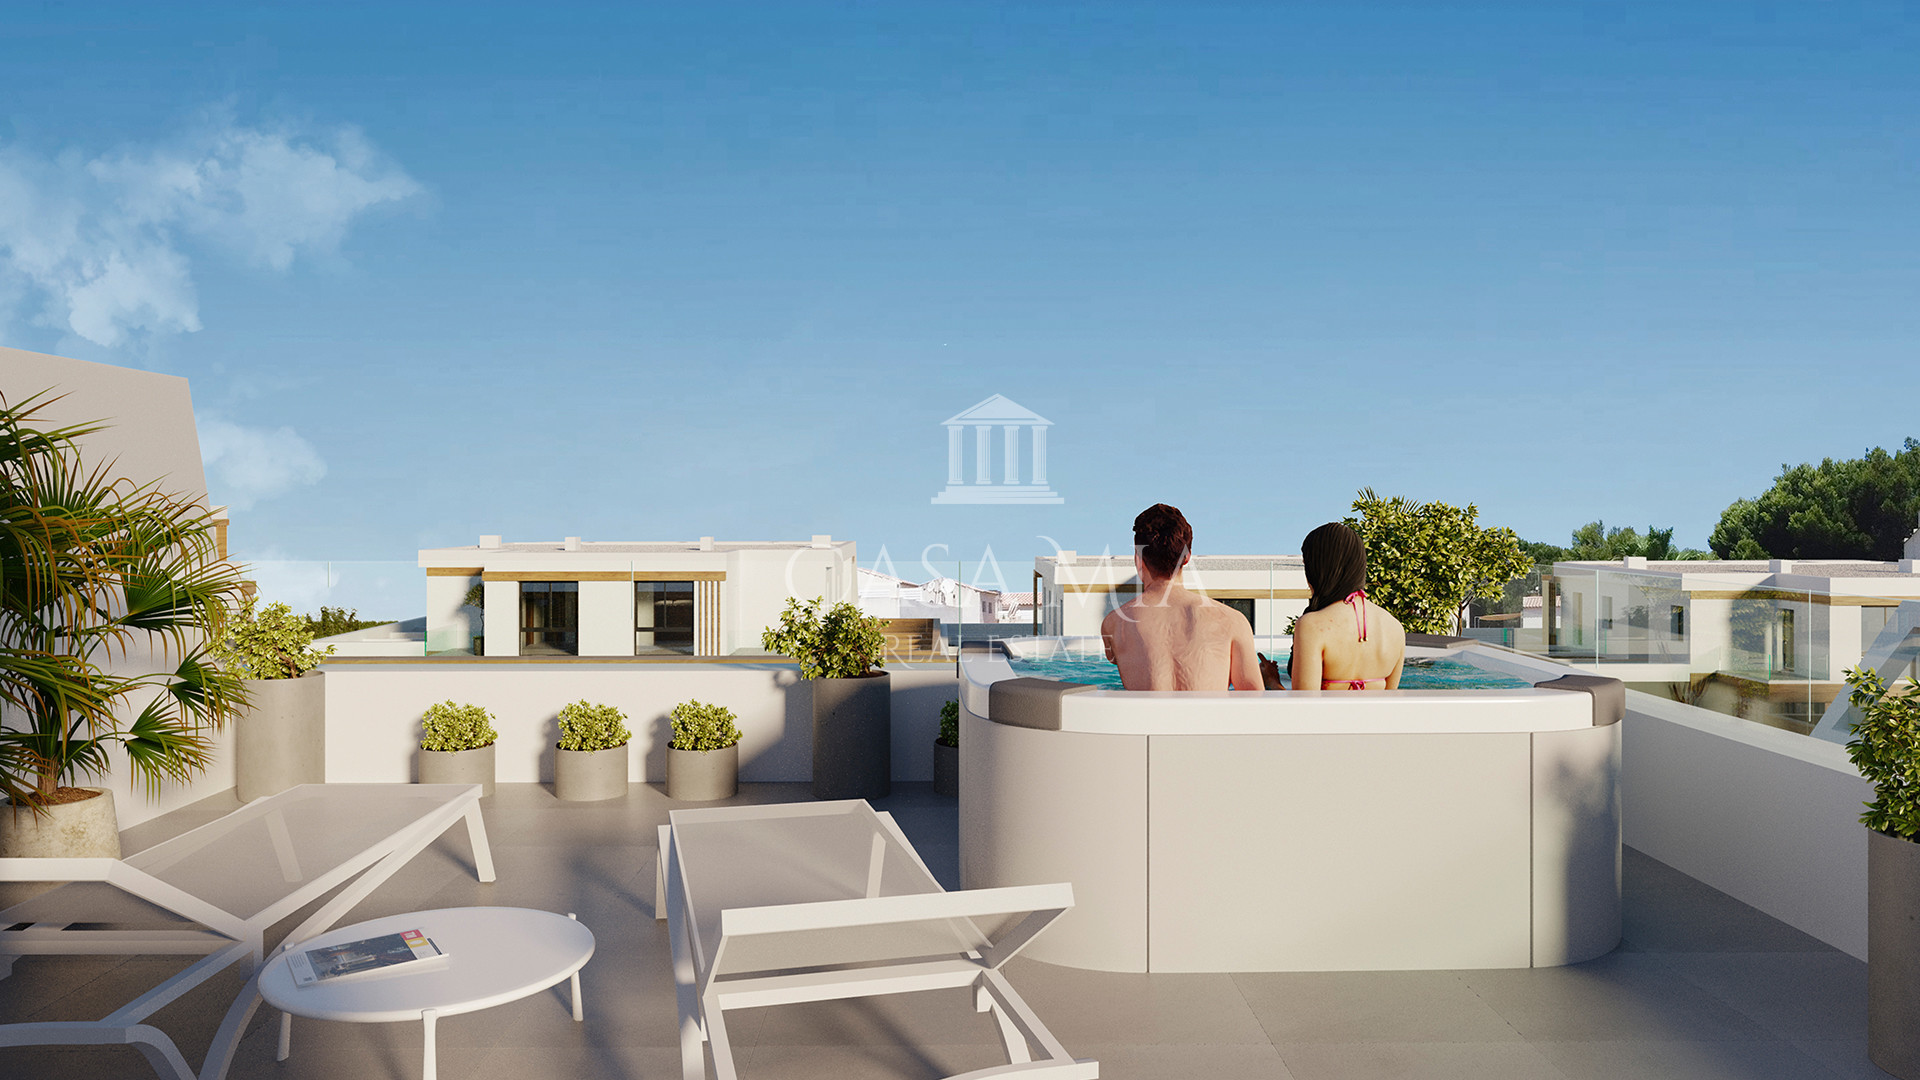 Exclusive maison jumelée design avec piscine privée & terrasse sur le toit, Cala Ratjada